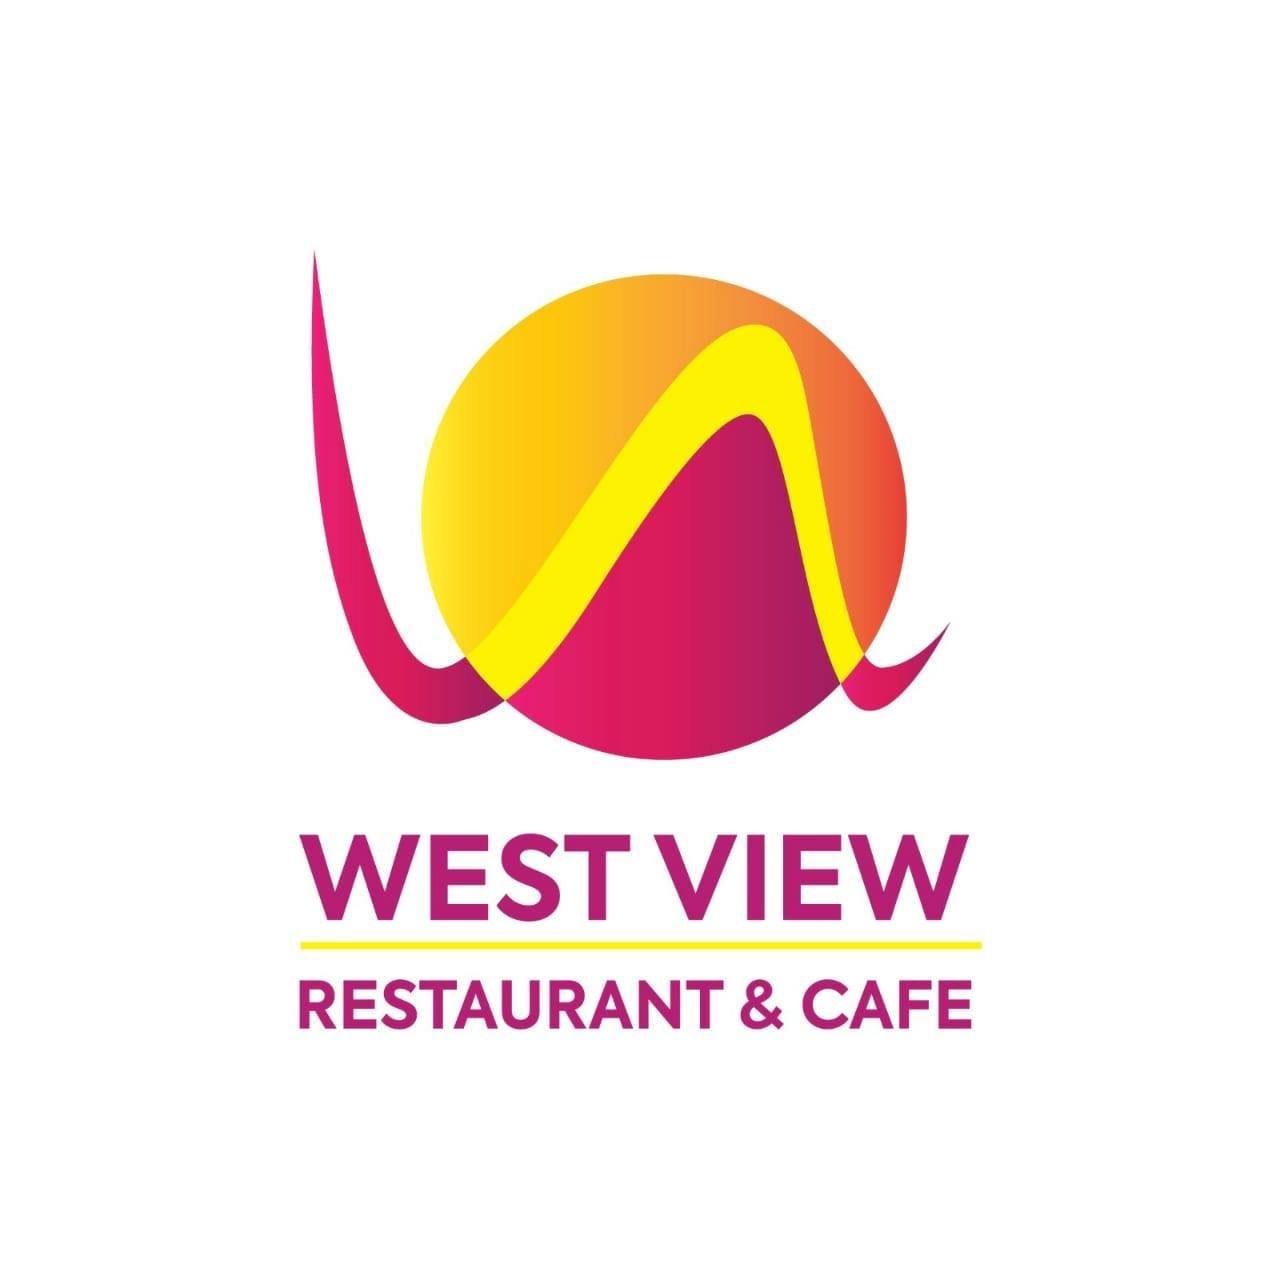 مطعم الطلة الغربية كافيه - West view Restaurant & Cafe 